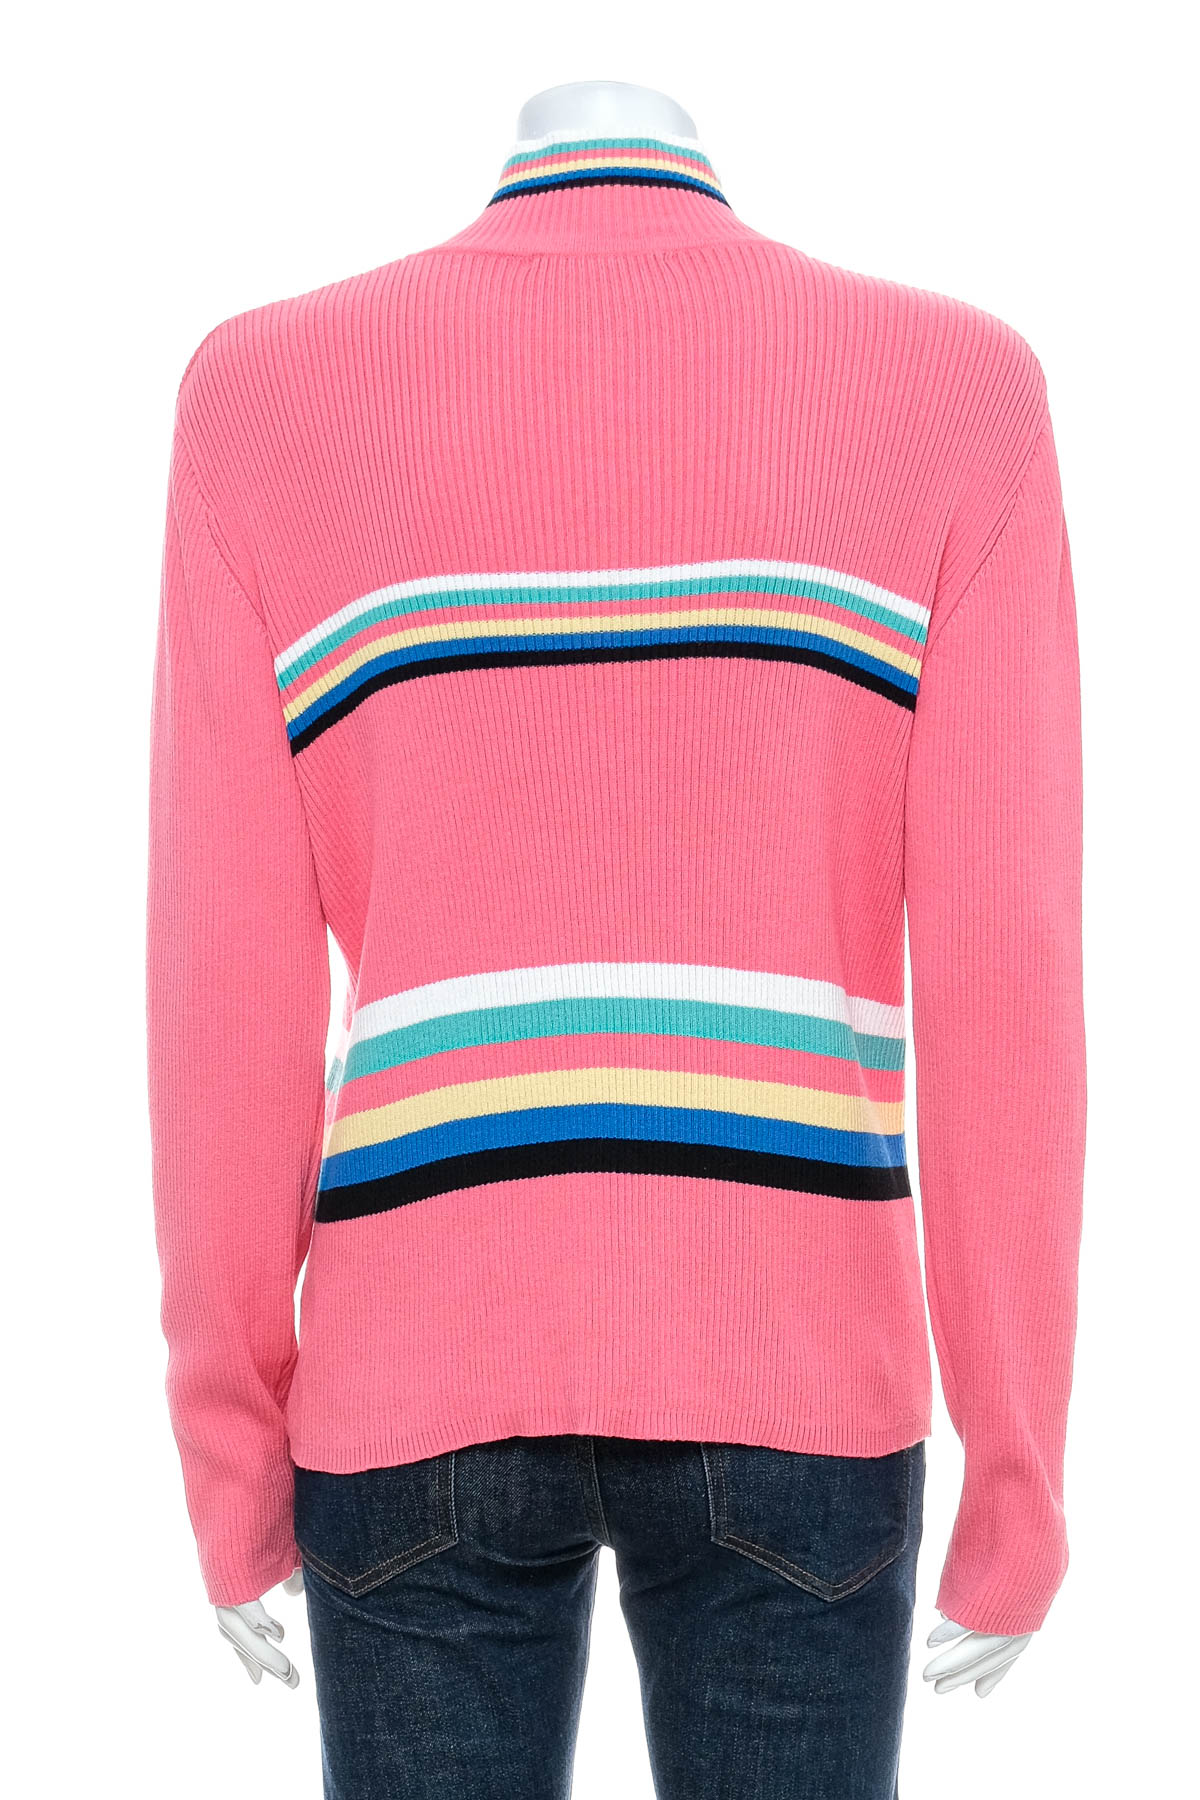 Women's sweater - Evan-Picone - 1